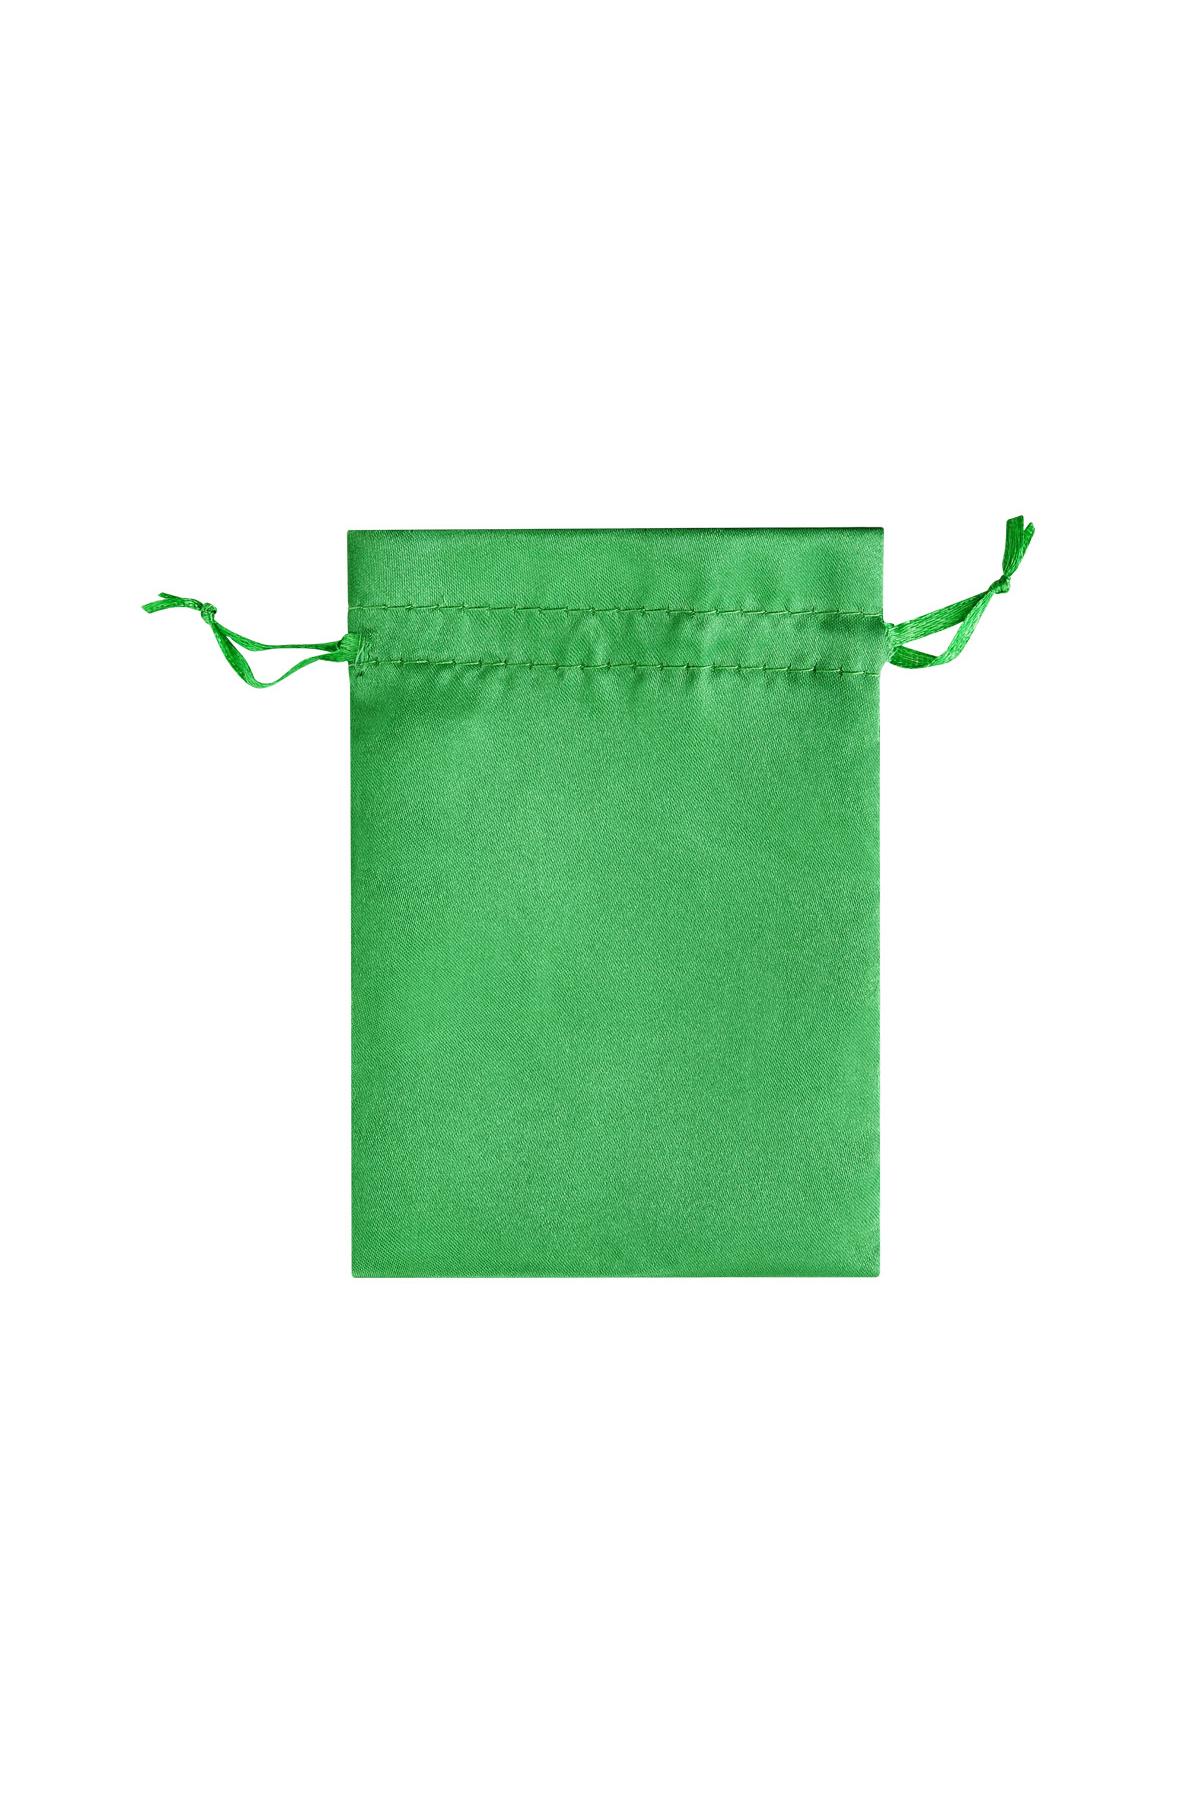 Schmuckbeutel Satin klein - grün Polyester h5 